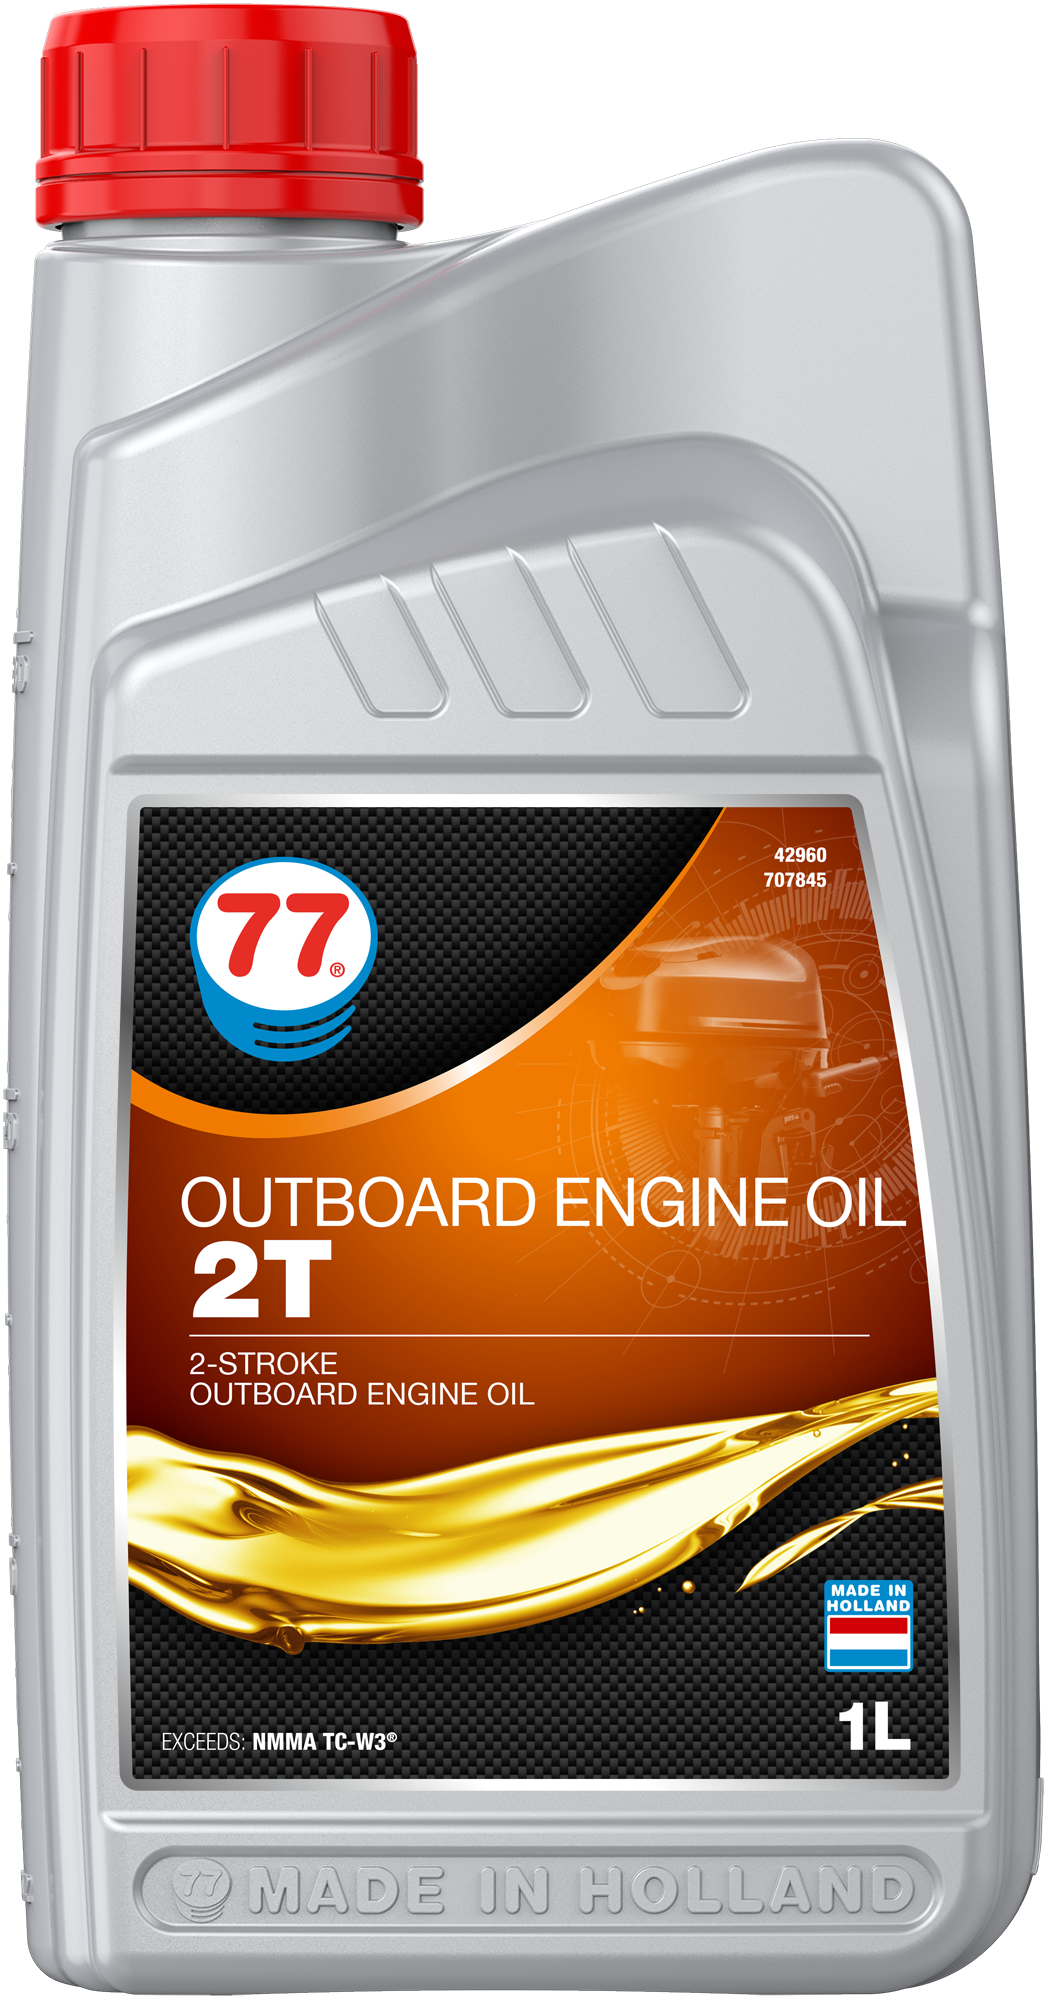 4296-1 Outboard Engine Oil 2T is een krachtige asloze 2-takt motorolie voor gebruik in moderne gekoelde buitenboordmotoren waar NMMA TC-W3 vereist is.